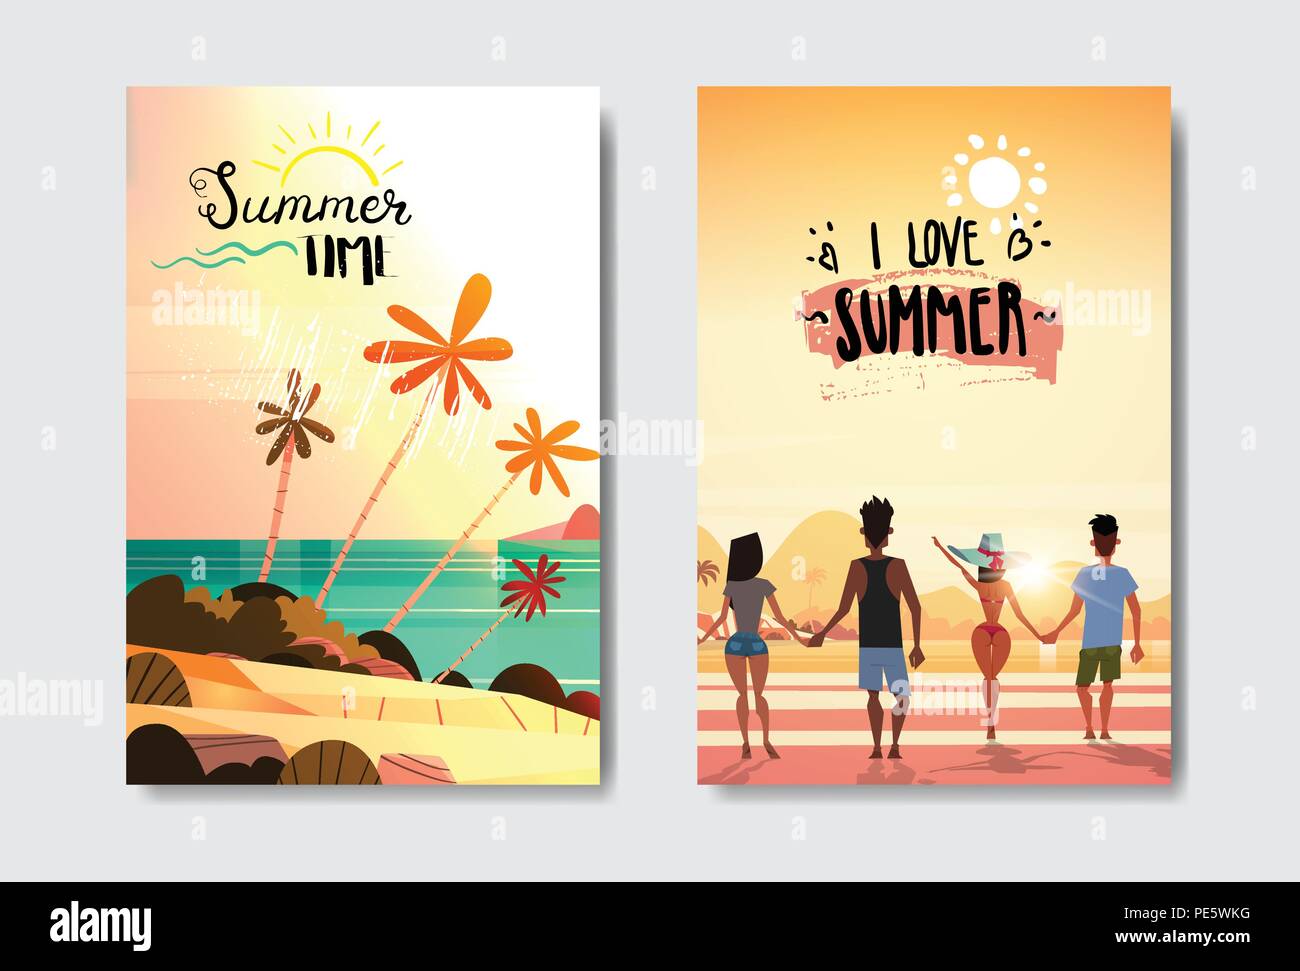 L'amour d'été jeu de personnes se tenant la main à coucher du soleil Vue arrière plage tropicale Design badge Label. locations de lettrage pour modèles,logo, invitation, carte de vœux, estampes et affiches. Illustration de Vecteur